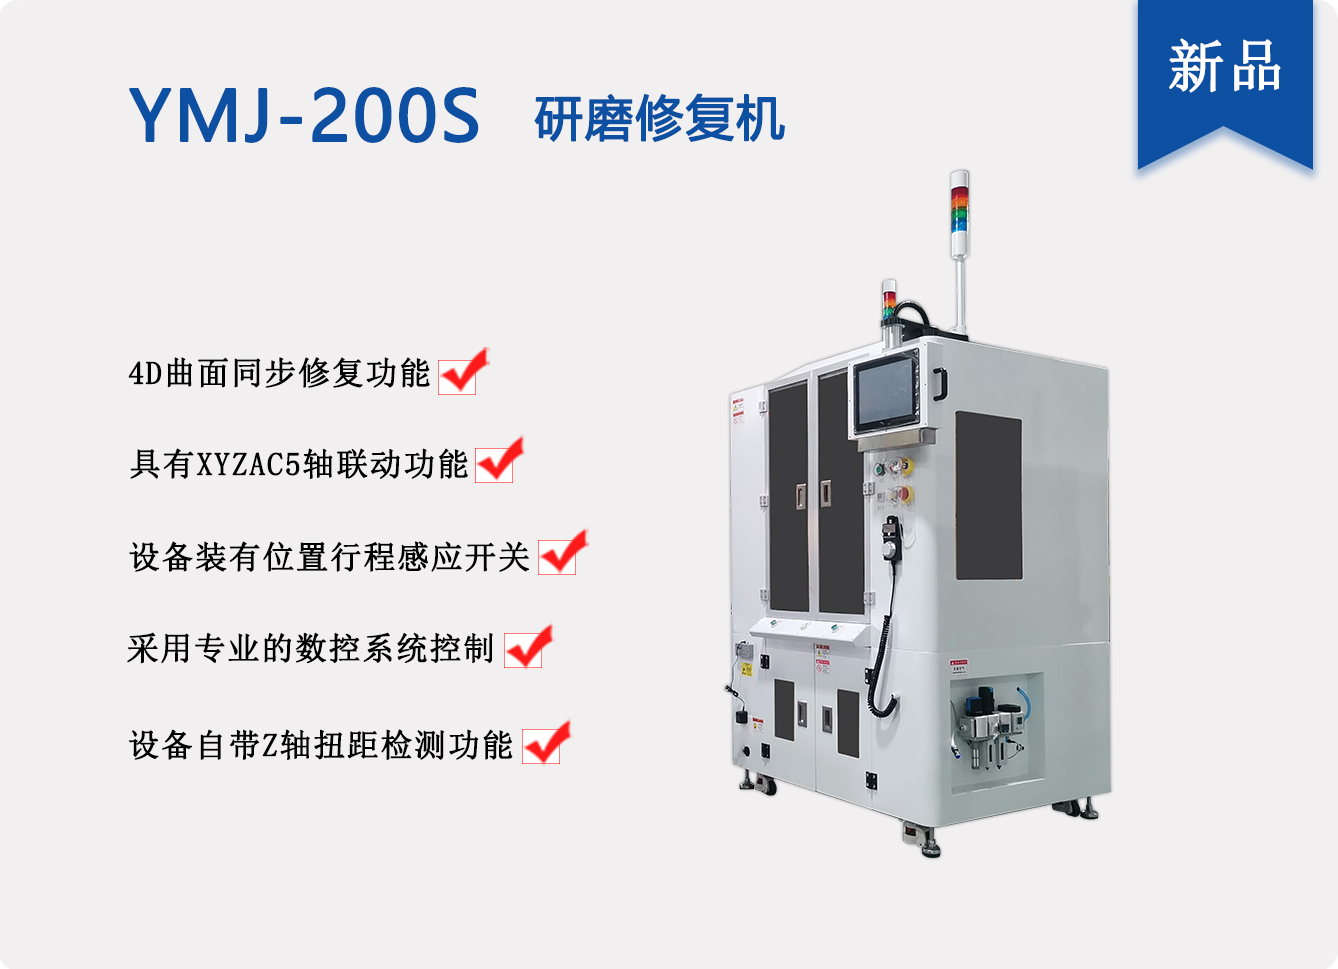 新研发的5轴联动研磨机YMJ-200S研磨设备